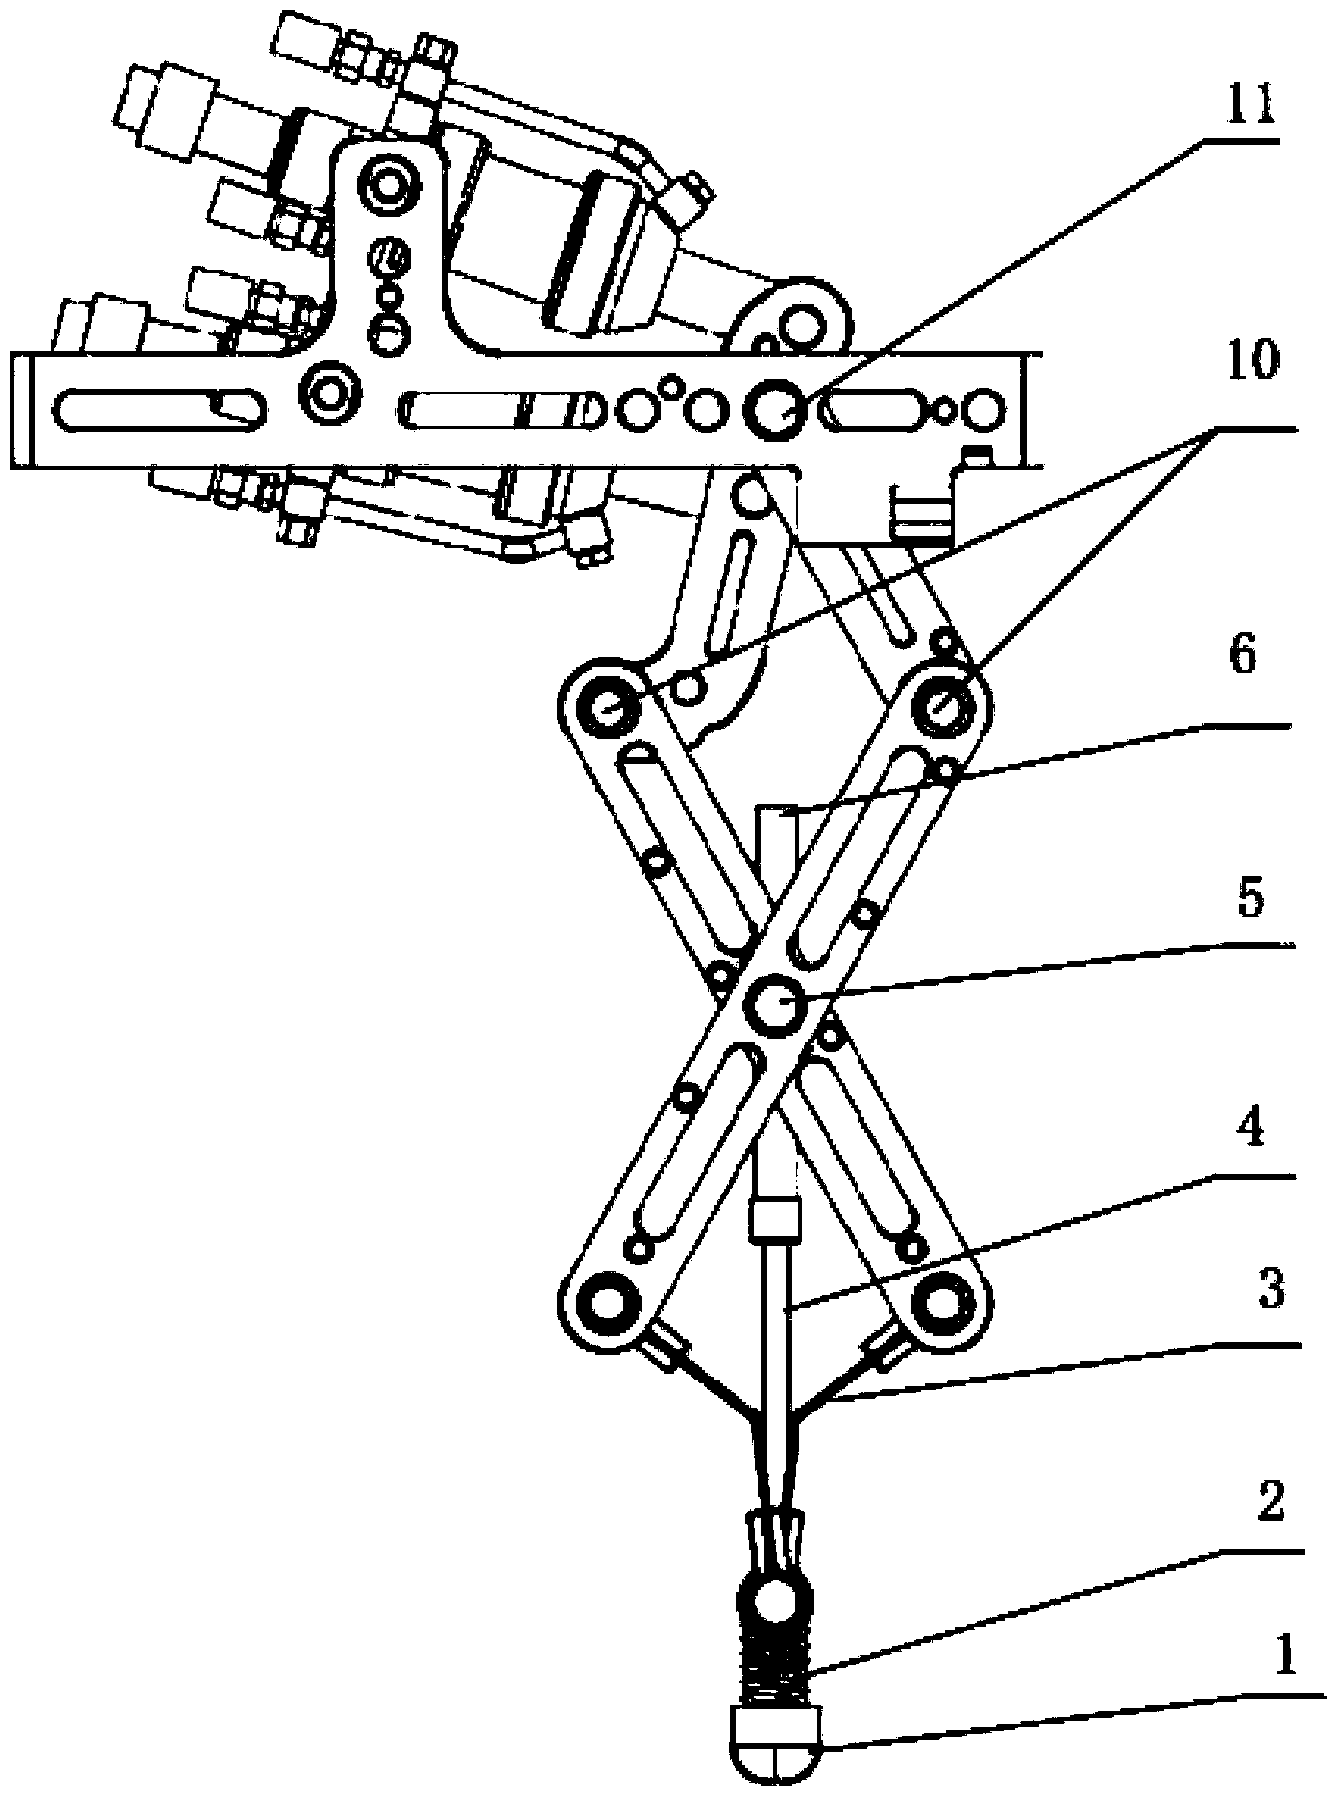 Leg buffer structure of walker